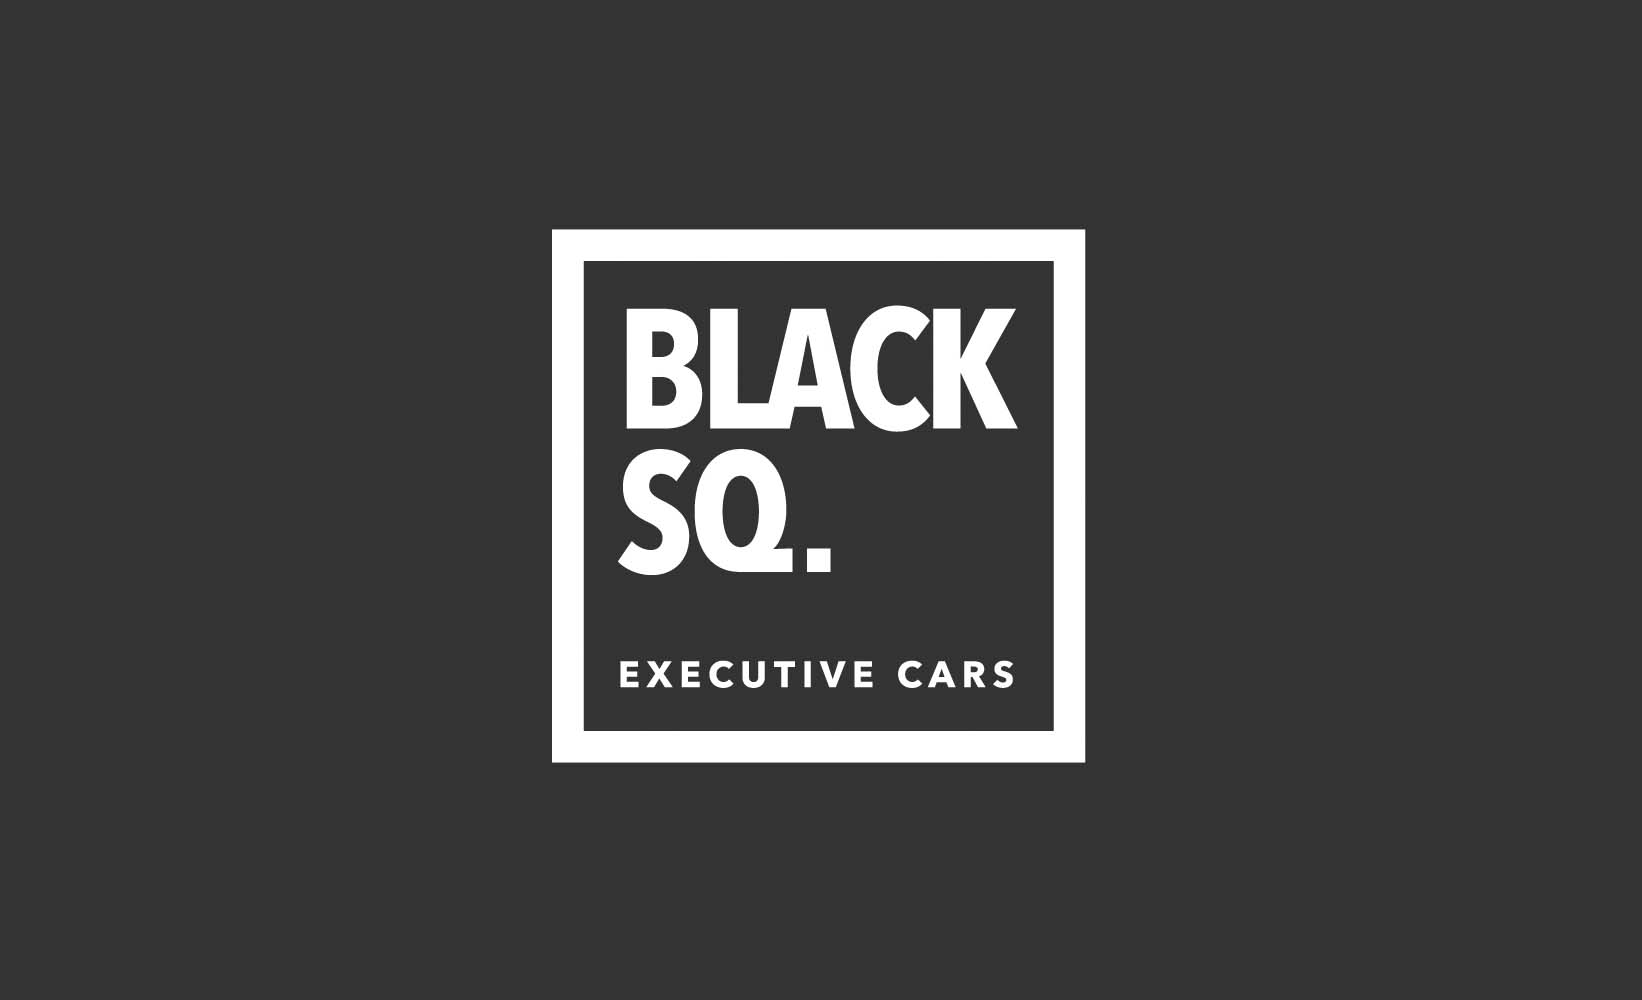 Black Square Executive Cars